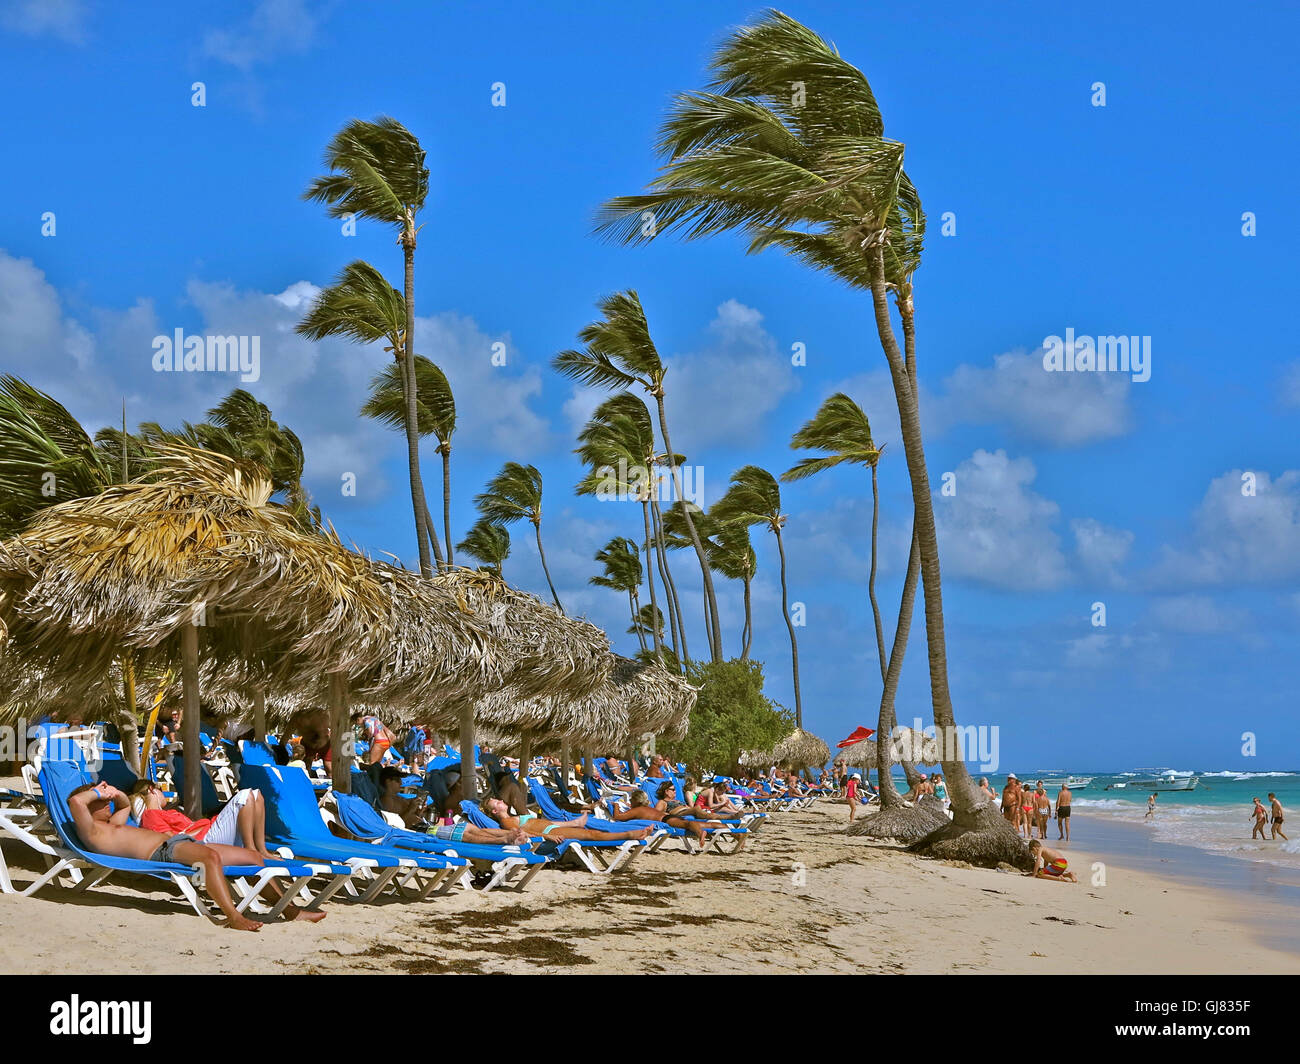 La République dominicaine, la plage de l'hôtel, les Caraïbes, Playa Bavaro Banque D'Images